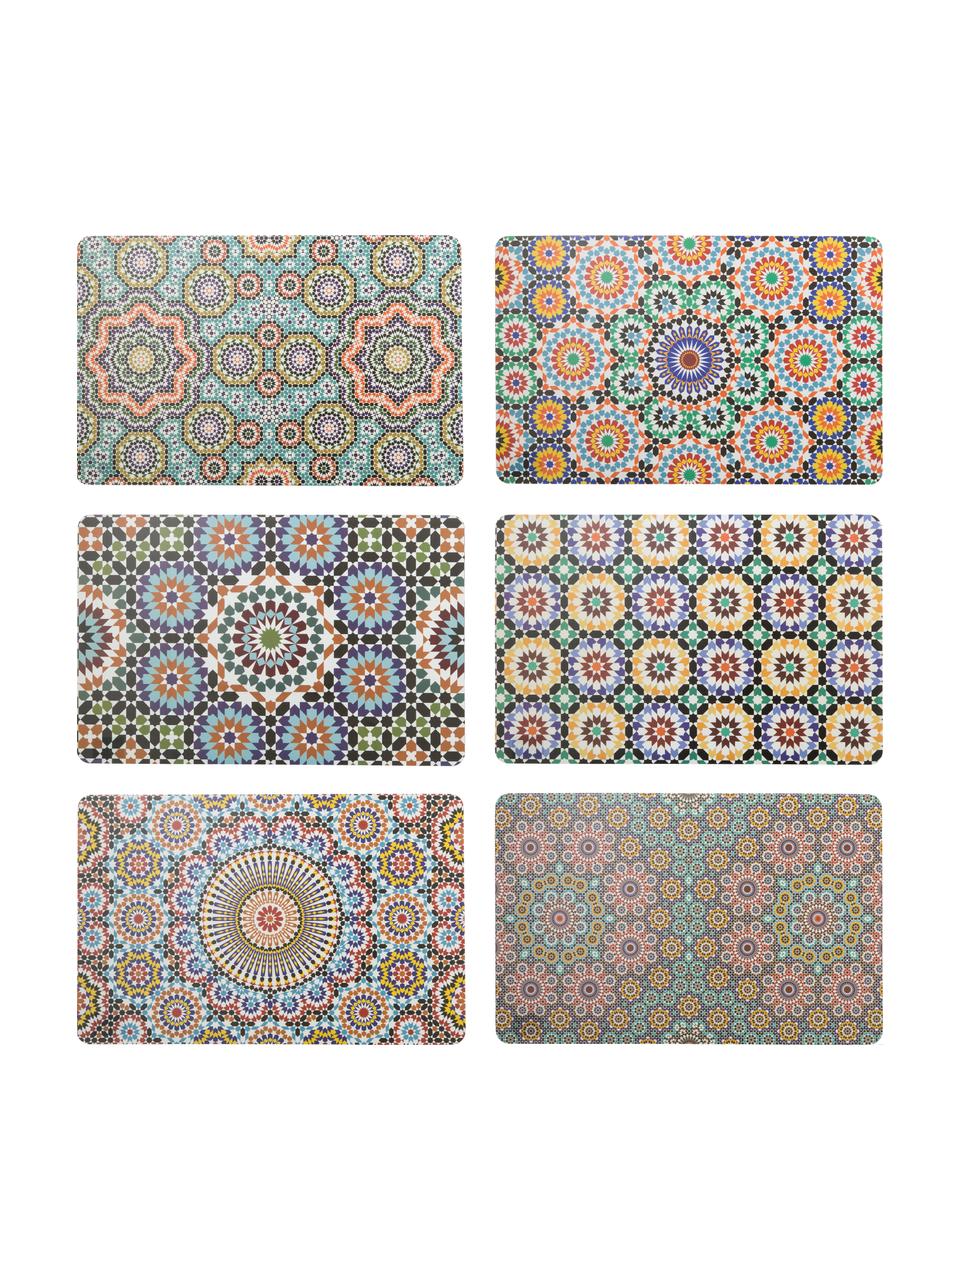 Kunststoff-Tischsets Marrakech, 6er Set, Kunststoff, Mehrfarbig, 28 x 44 cm